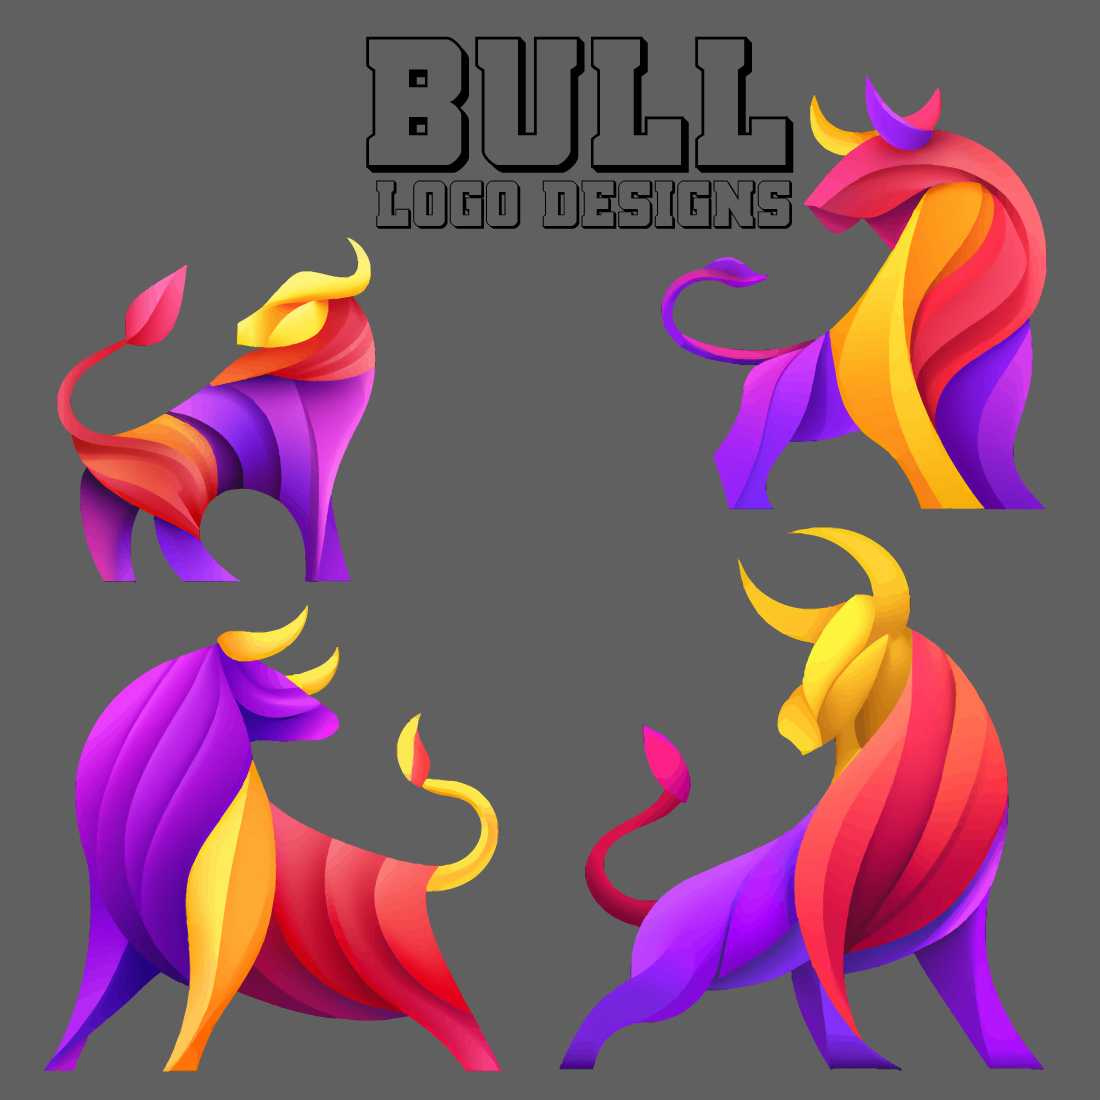 4 bull multicolor logo design cover image.